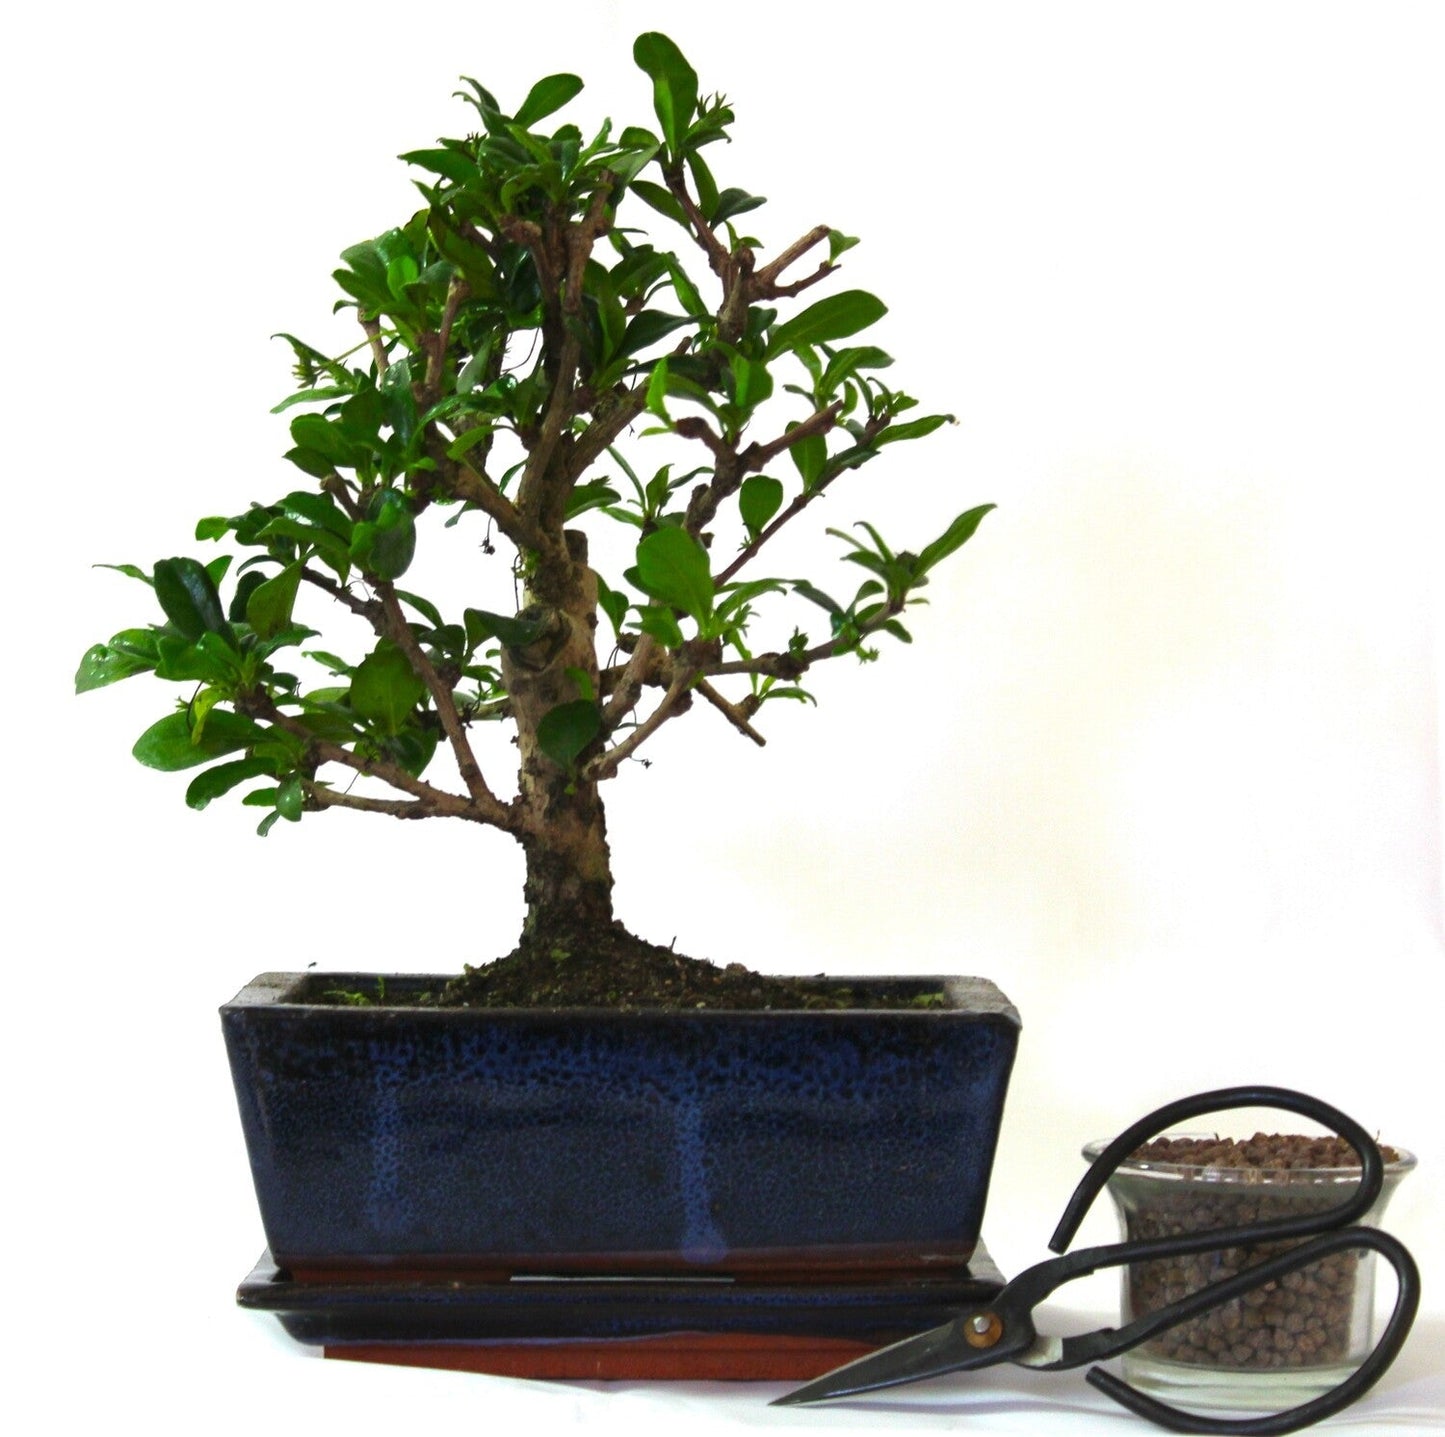 Carmona (Fukien Tea) Bonsai Tree Broom Style - supplied with ceramic drip tray .